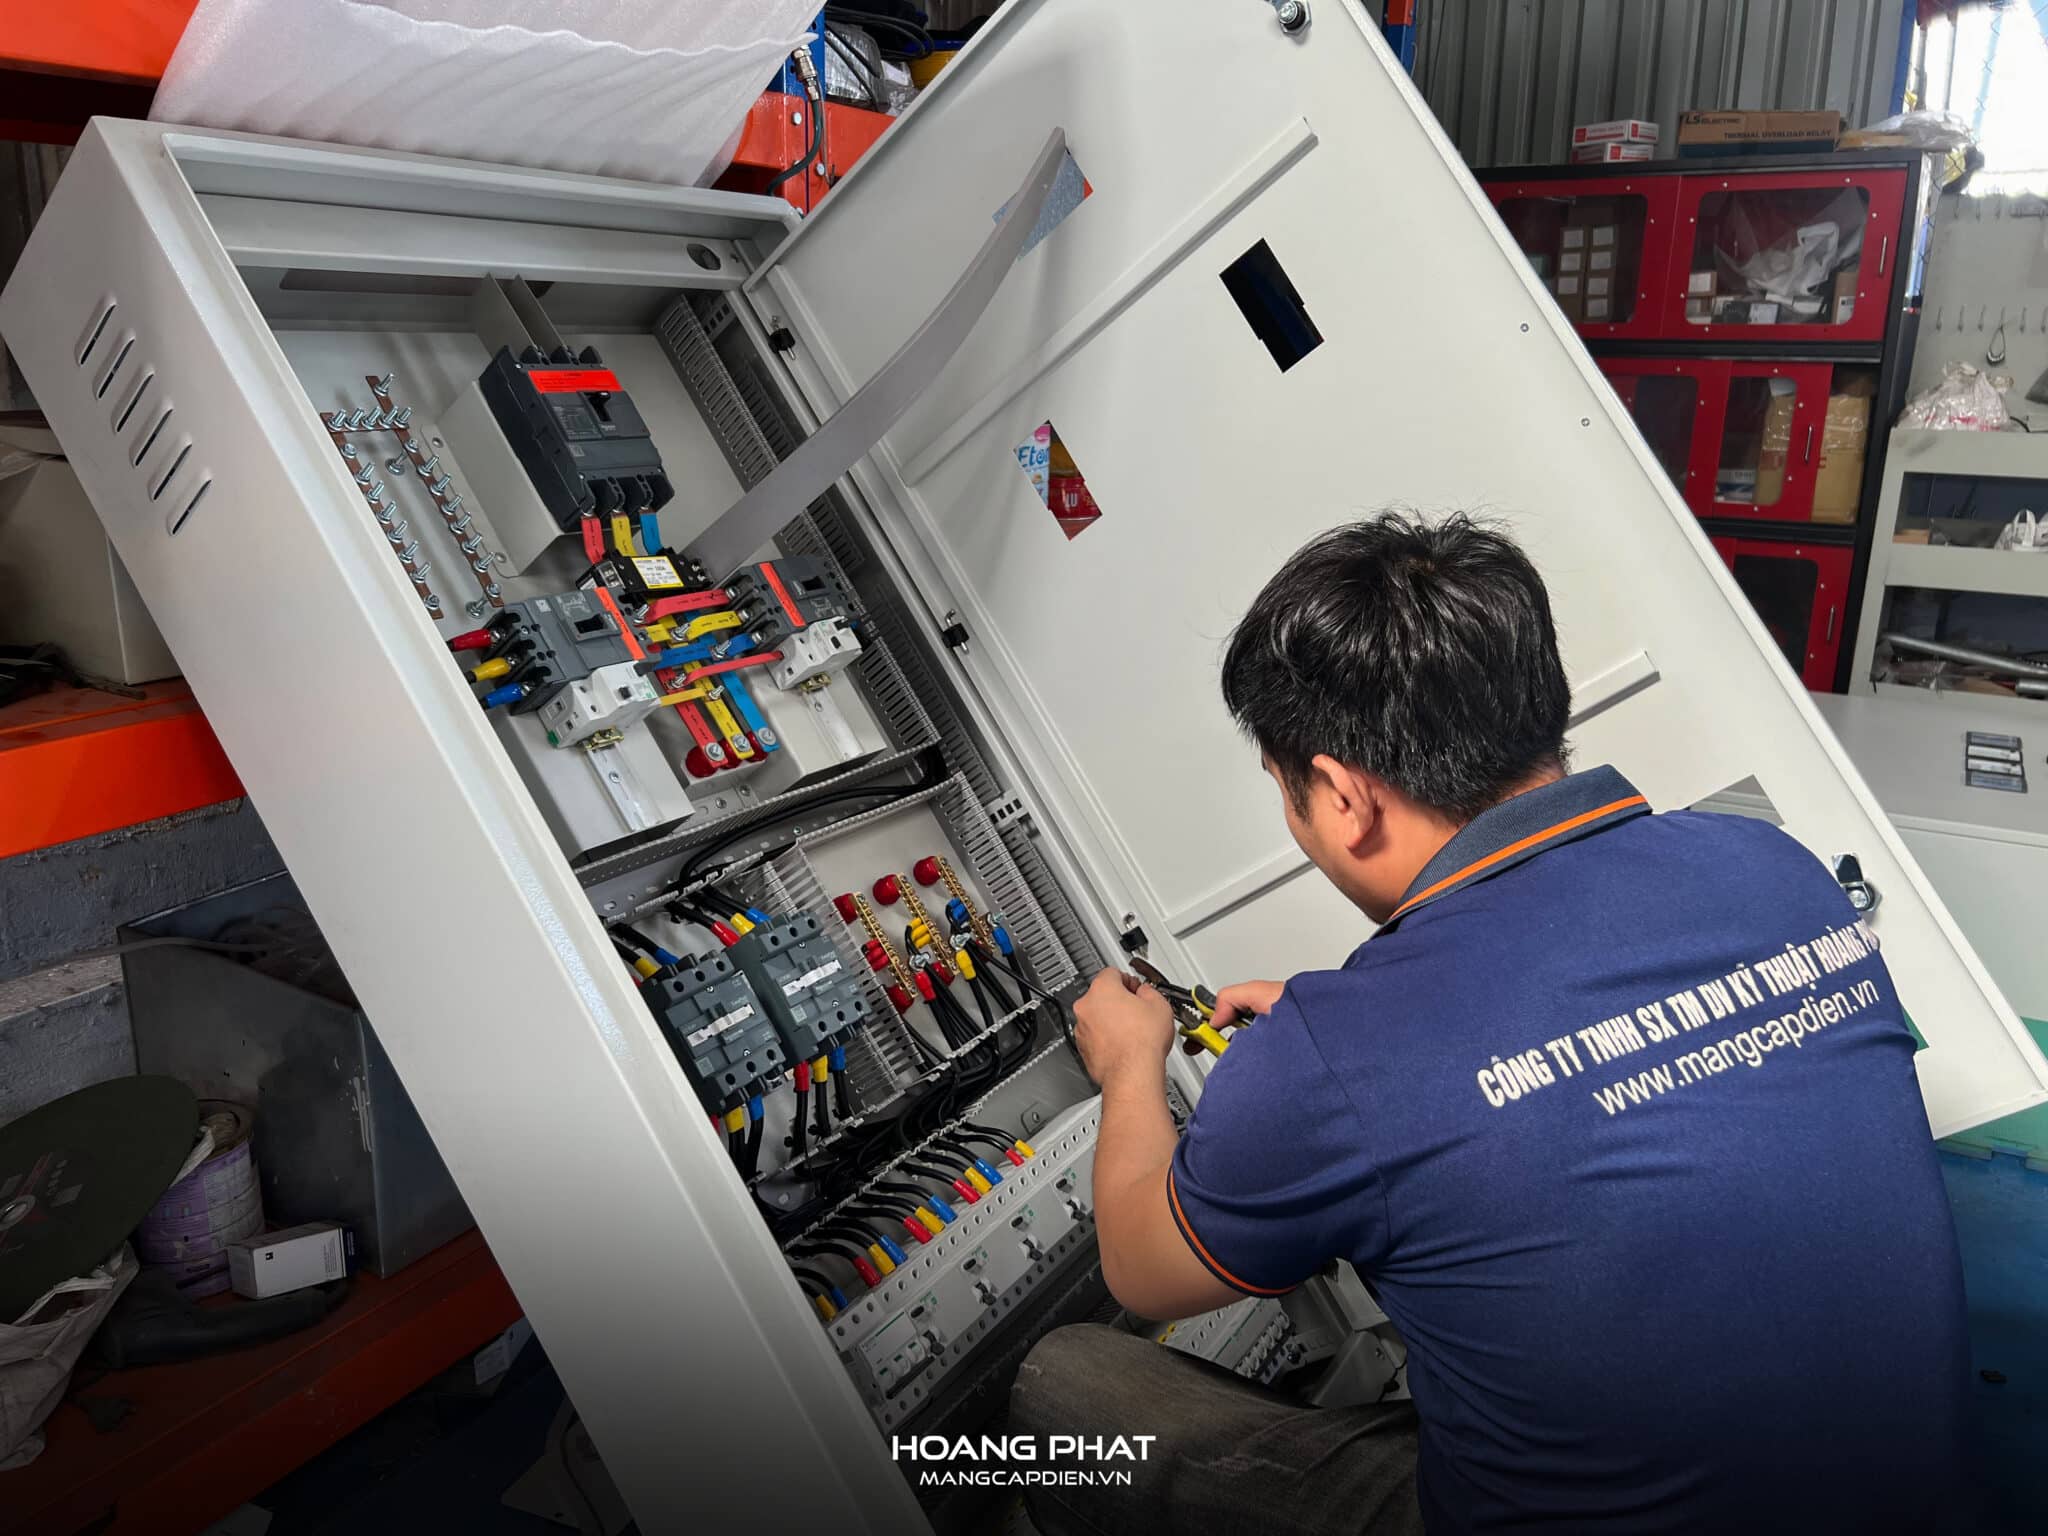 Tủ điện công nghiệp Hoàng Phát luôn tuân thủ các tiêu chuẩn lắp đặt theo quy định